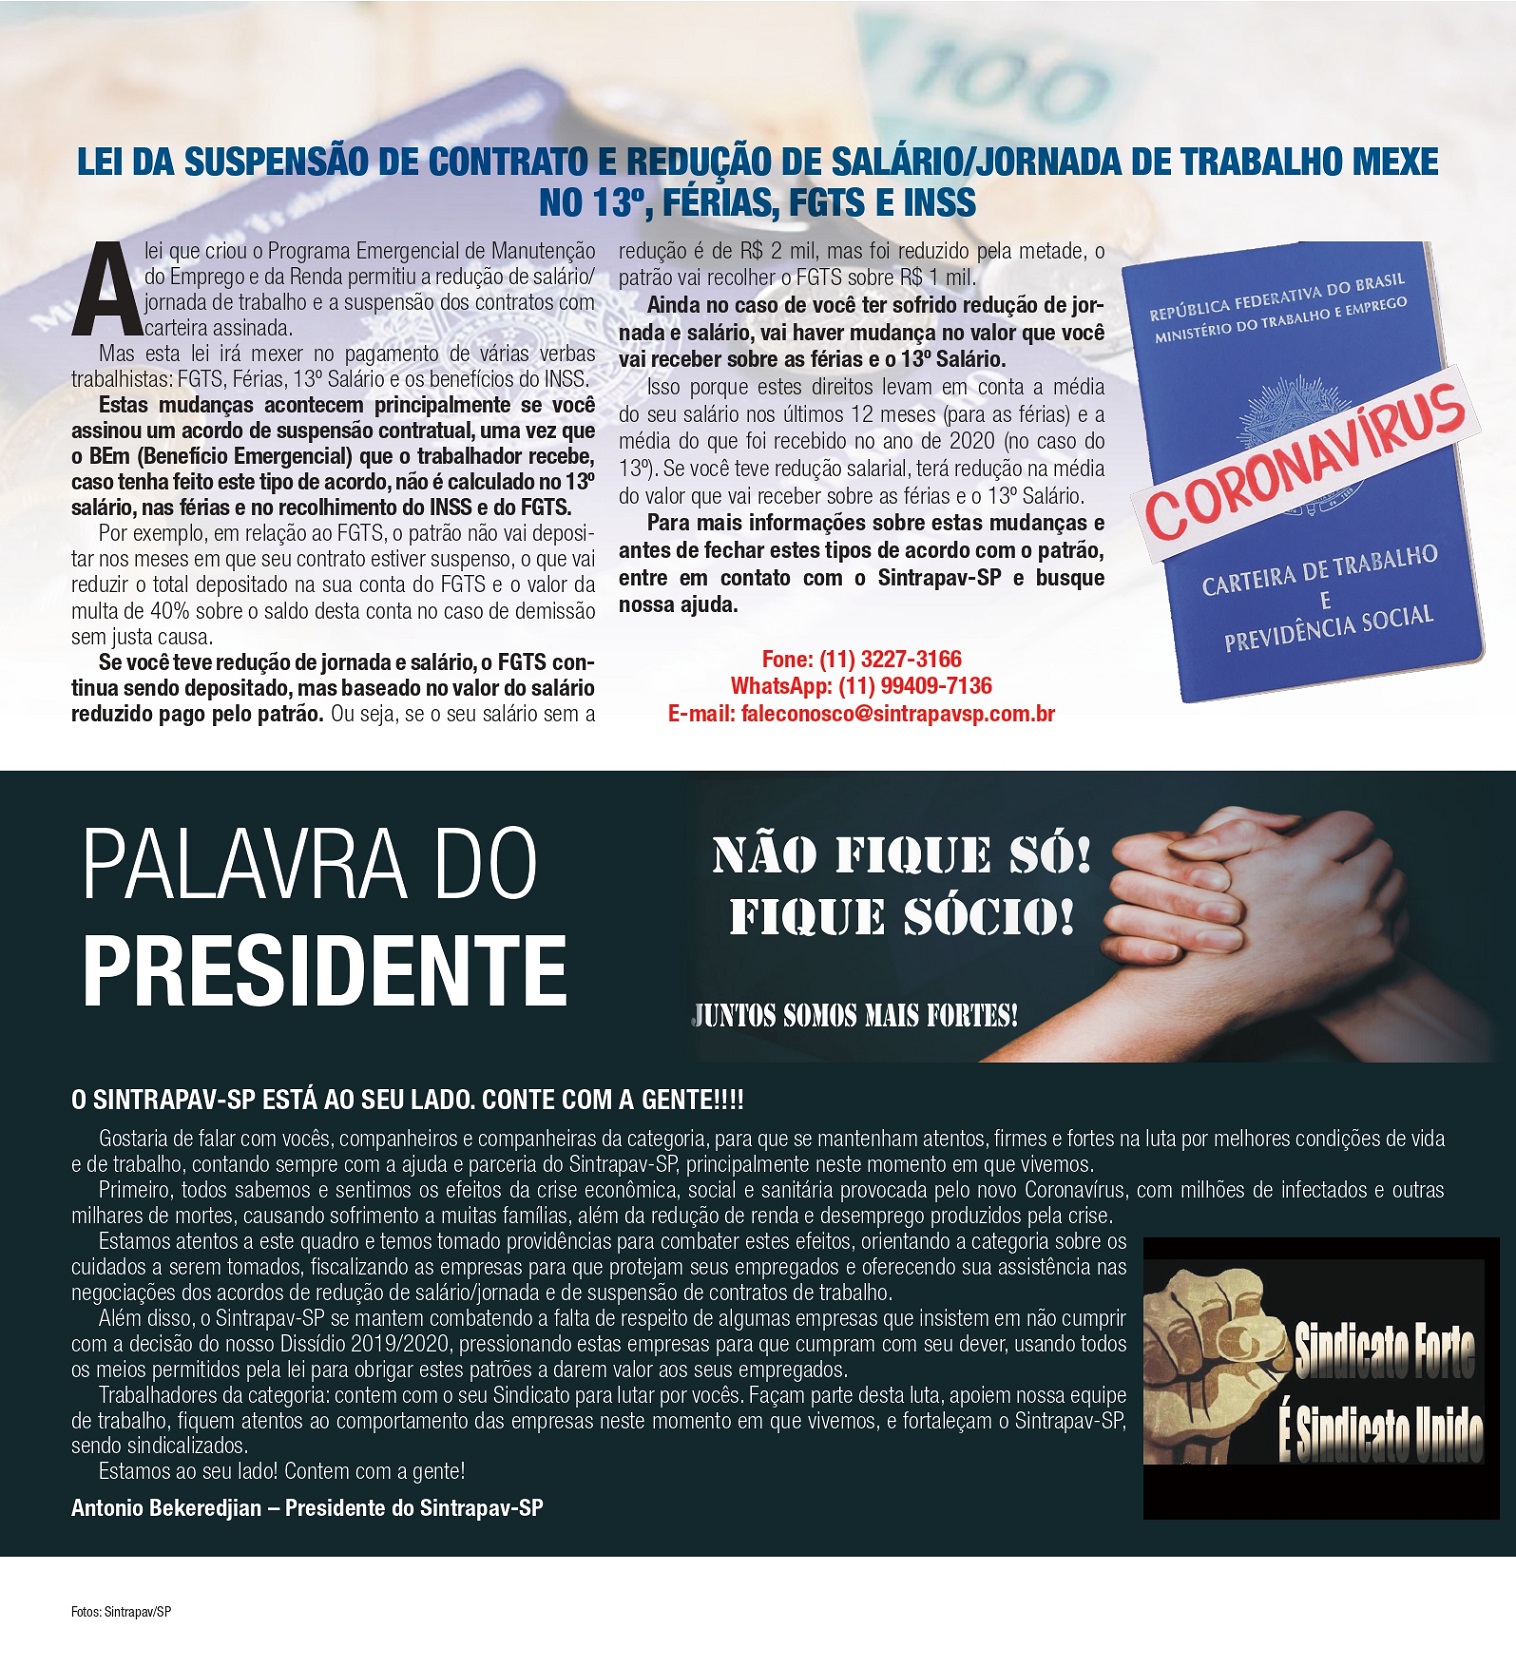 Folha da Pesada Setembro 2020 2a prova page 00031